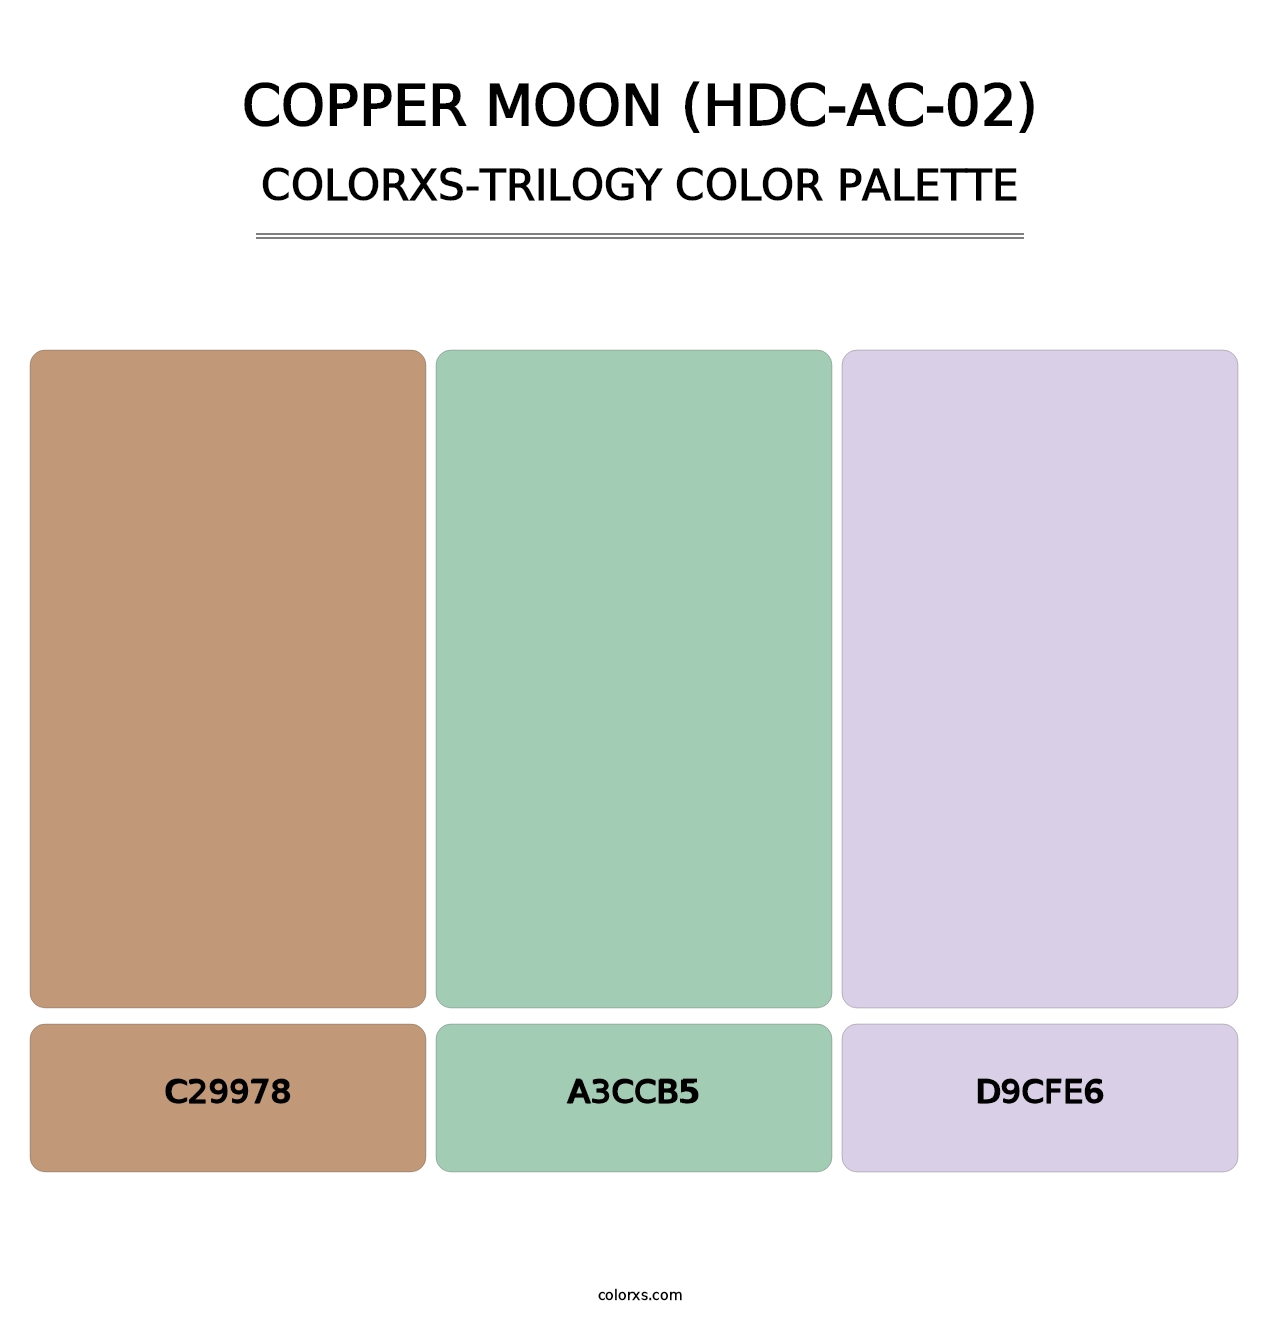 Copper Moon (HDC-AC-02) - Colorxs Trilogy Palette